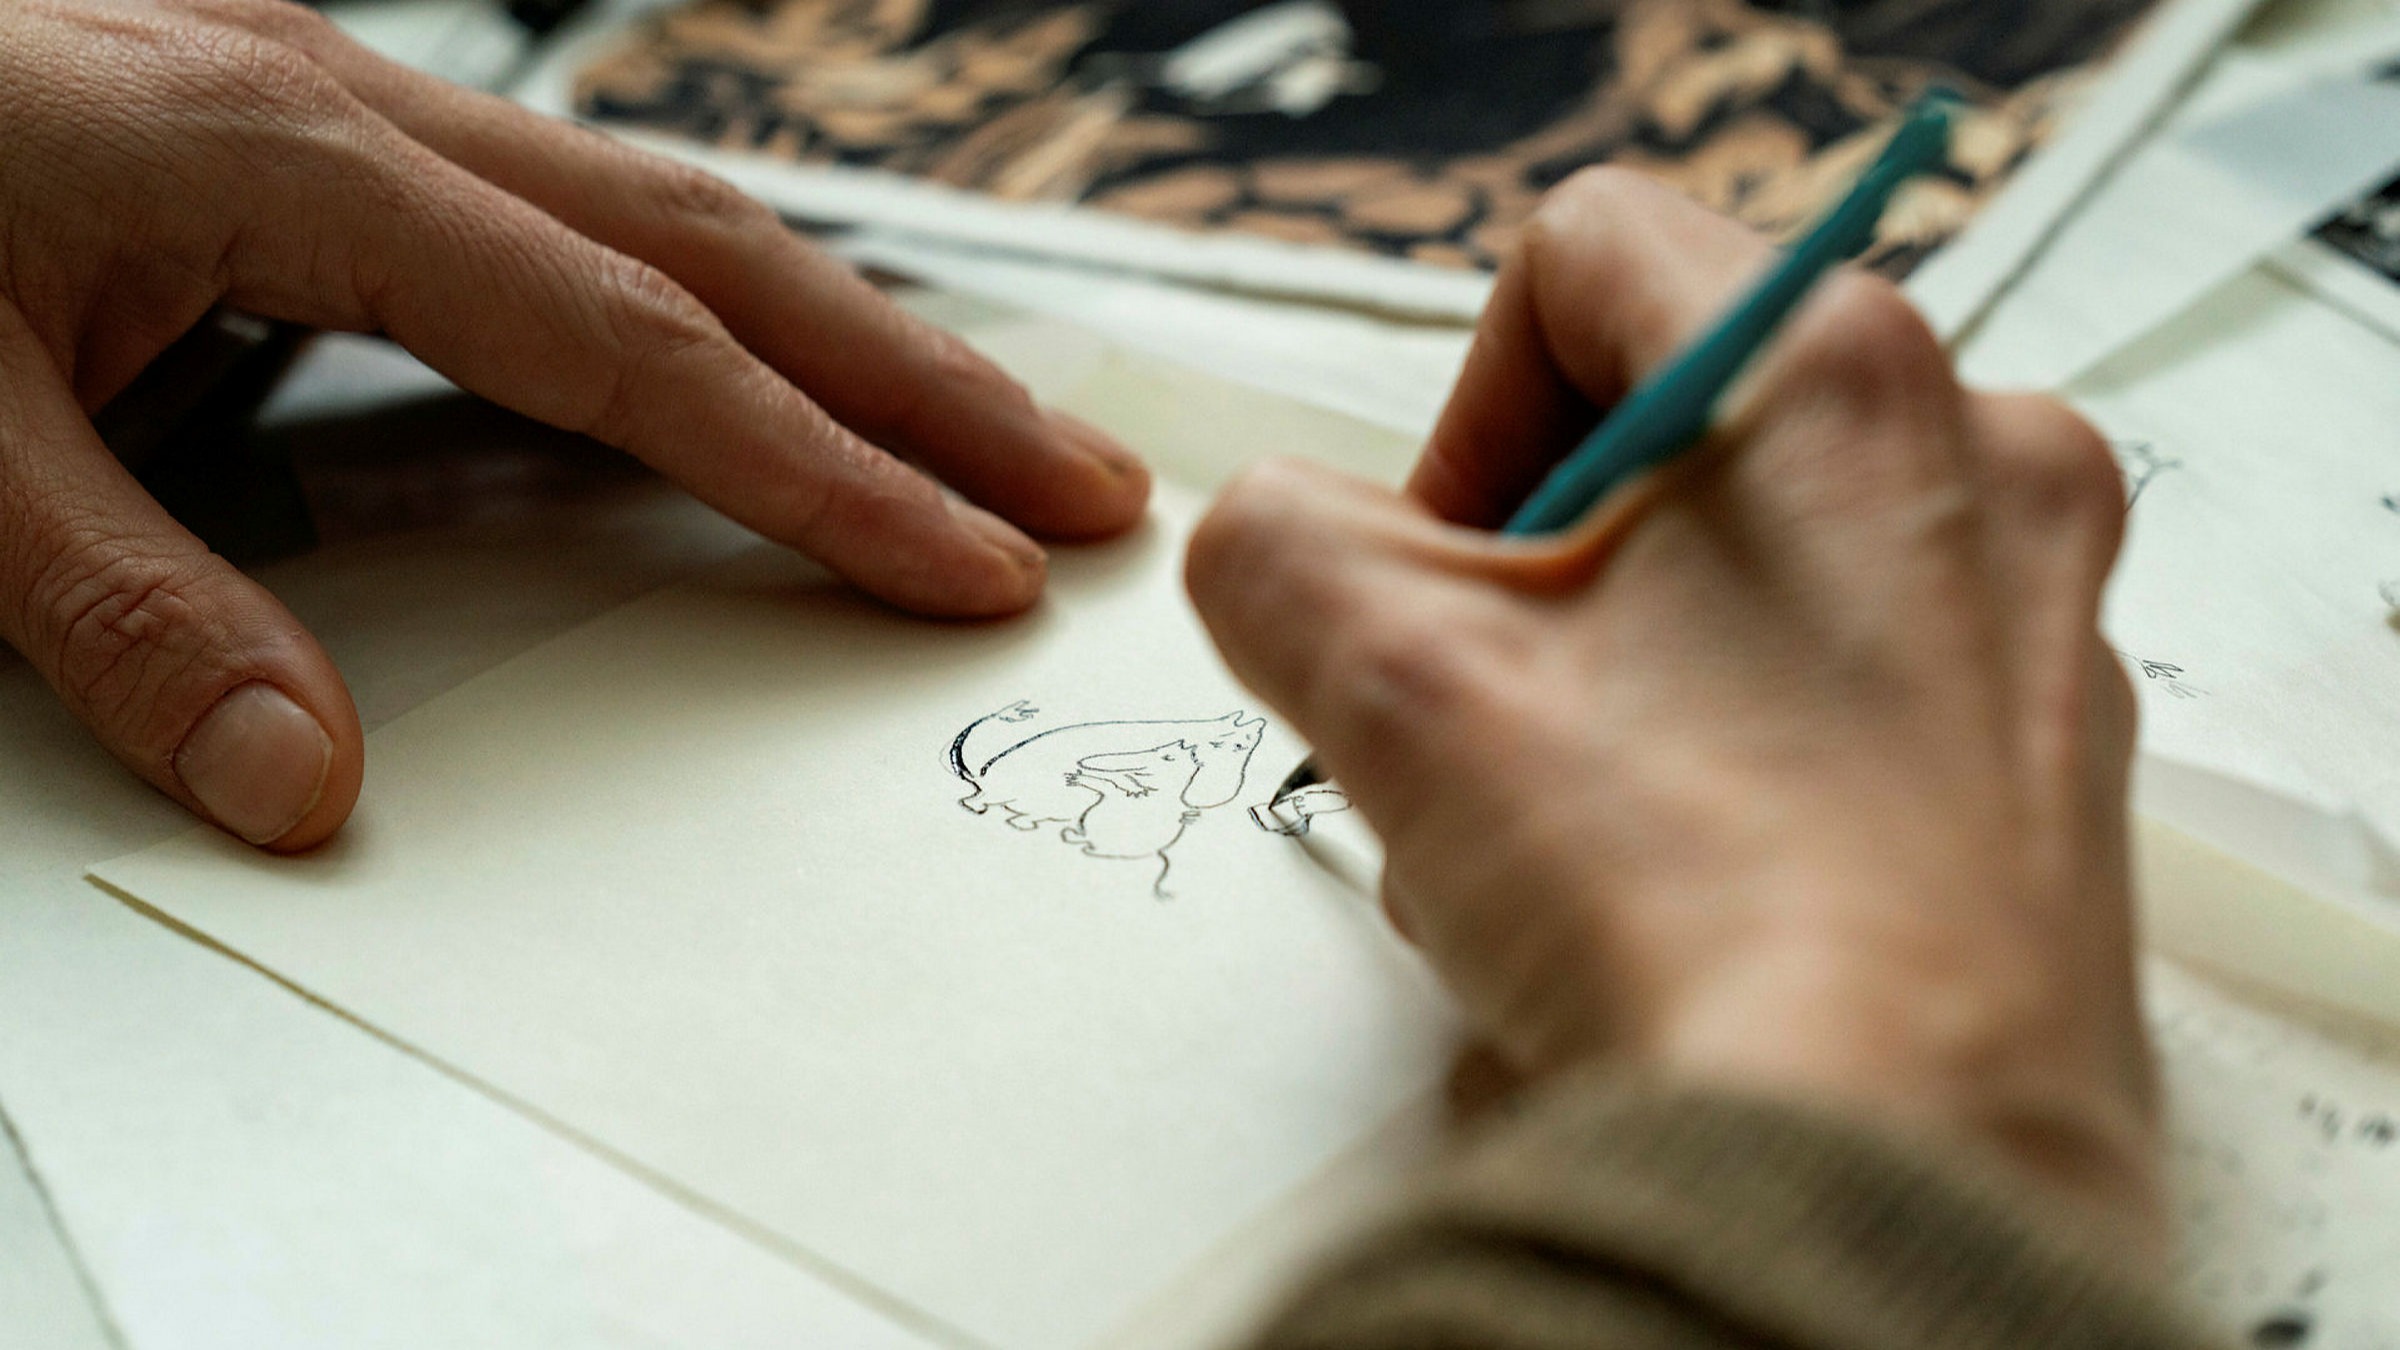 Cena do filme Tove. Na imagem, vemos, em close up, duas mãos brancas desenhando em um papel. A mão direita segura um lápis azul e desenha dois personagens Moomins, criaturas fictícias que lembram hipopótamos.